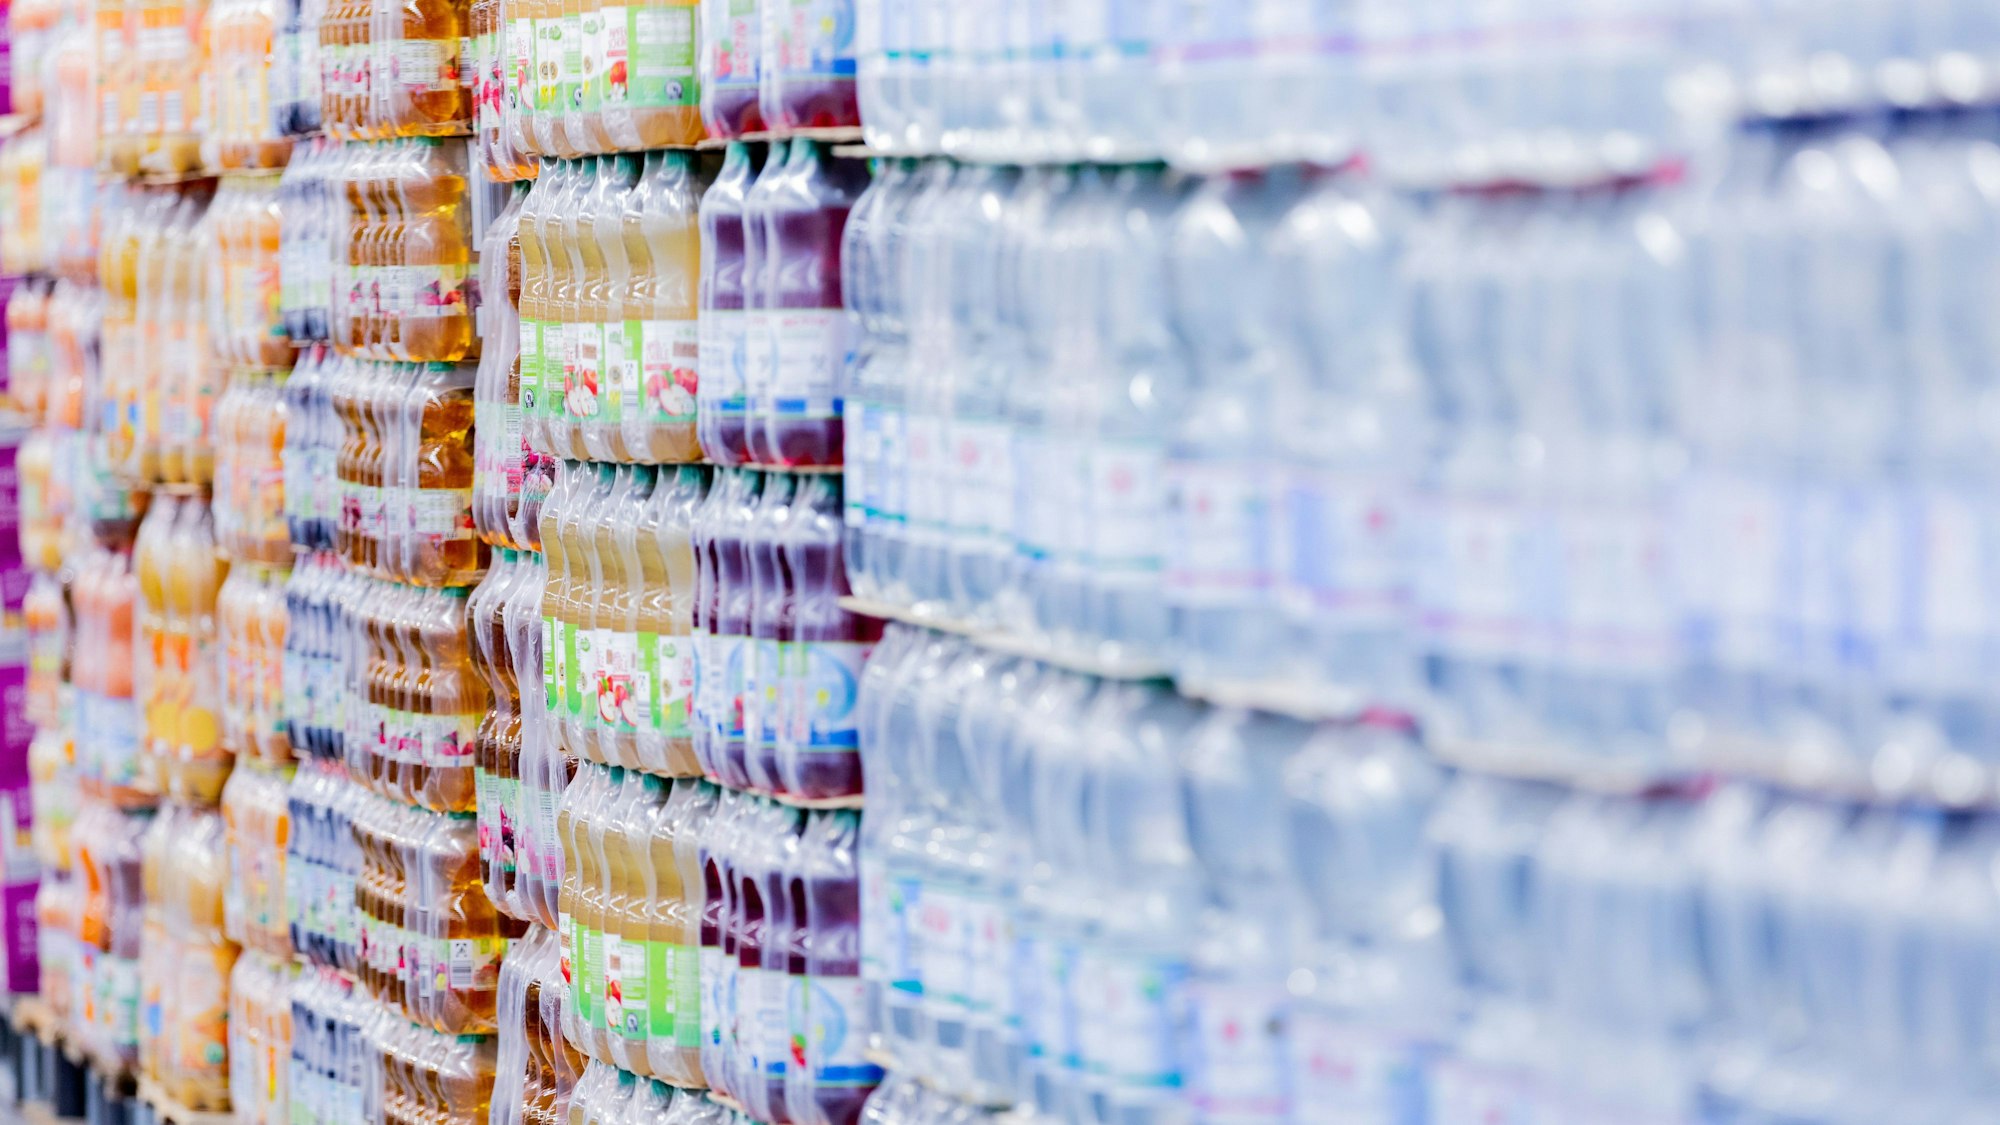 Einweg-Plastikflaschen stehen in einem Supermarkt auf Paletten.